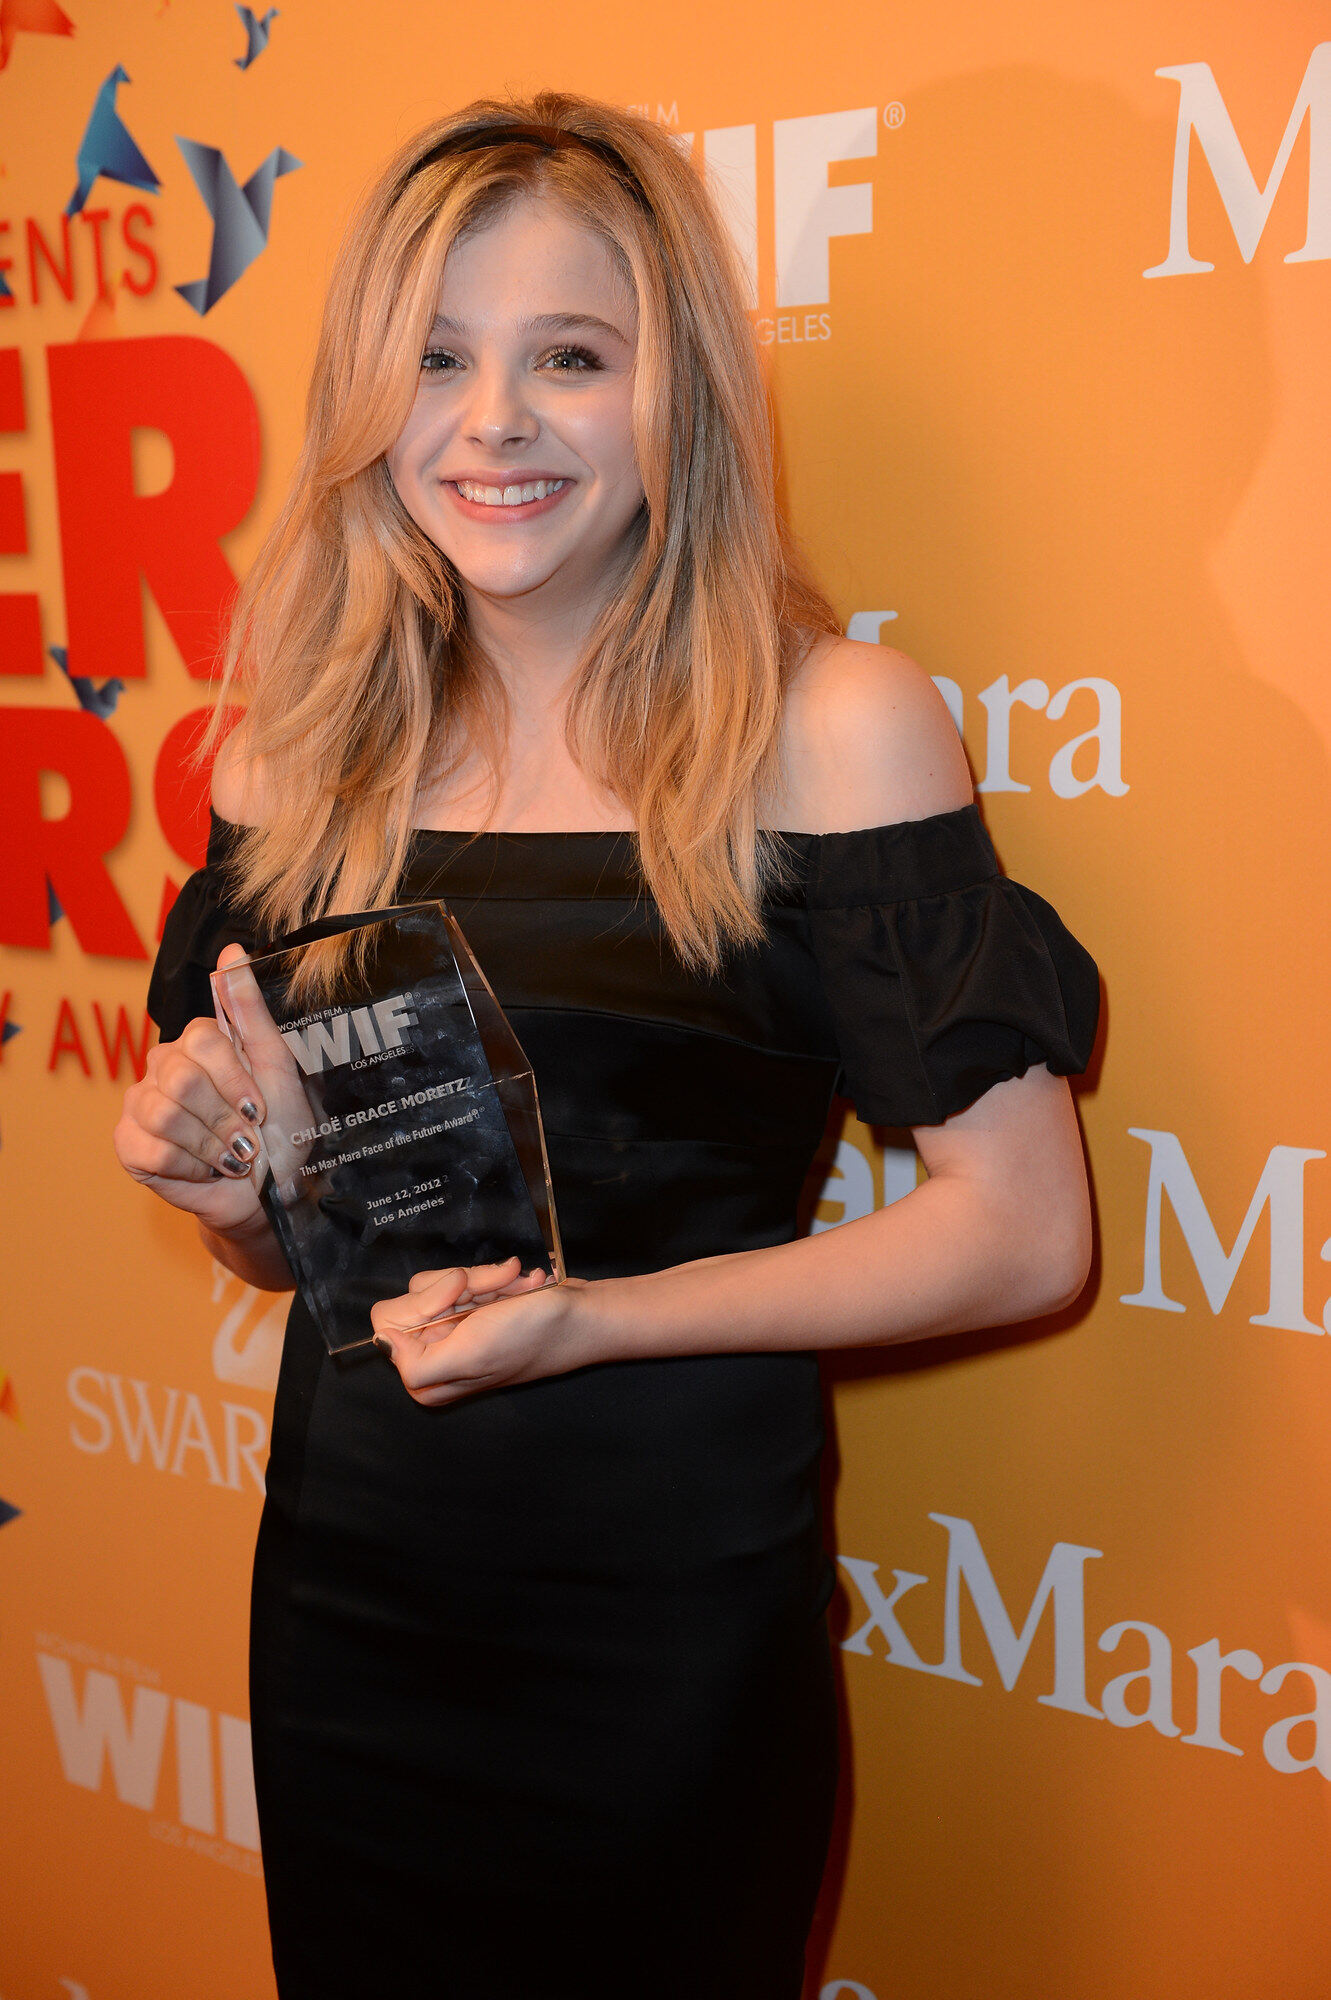 童星出身的Chloë Moretz在2012年獲頒Max Mara 未來之星®獎，這些年來她繼續活躍在荷